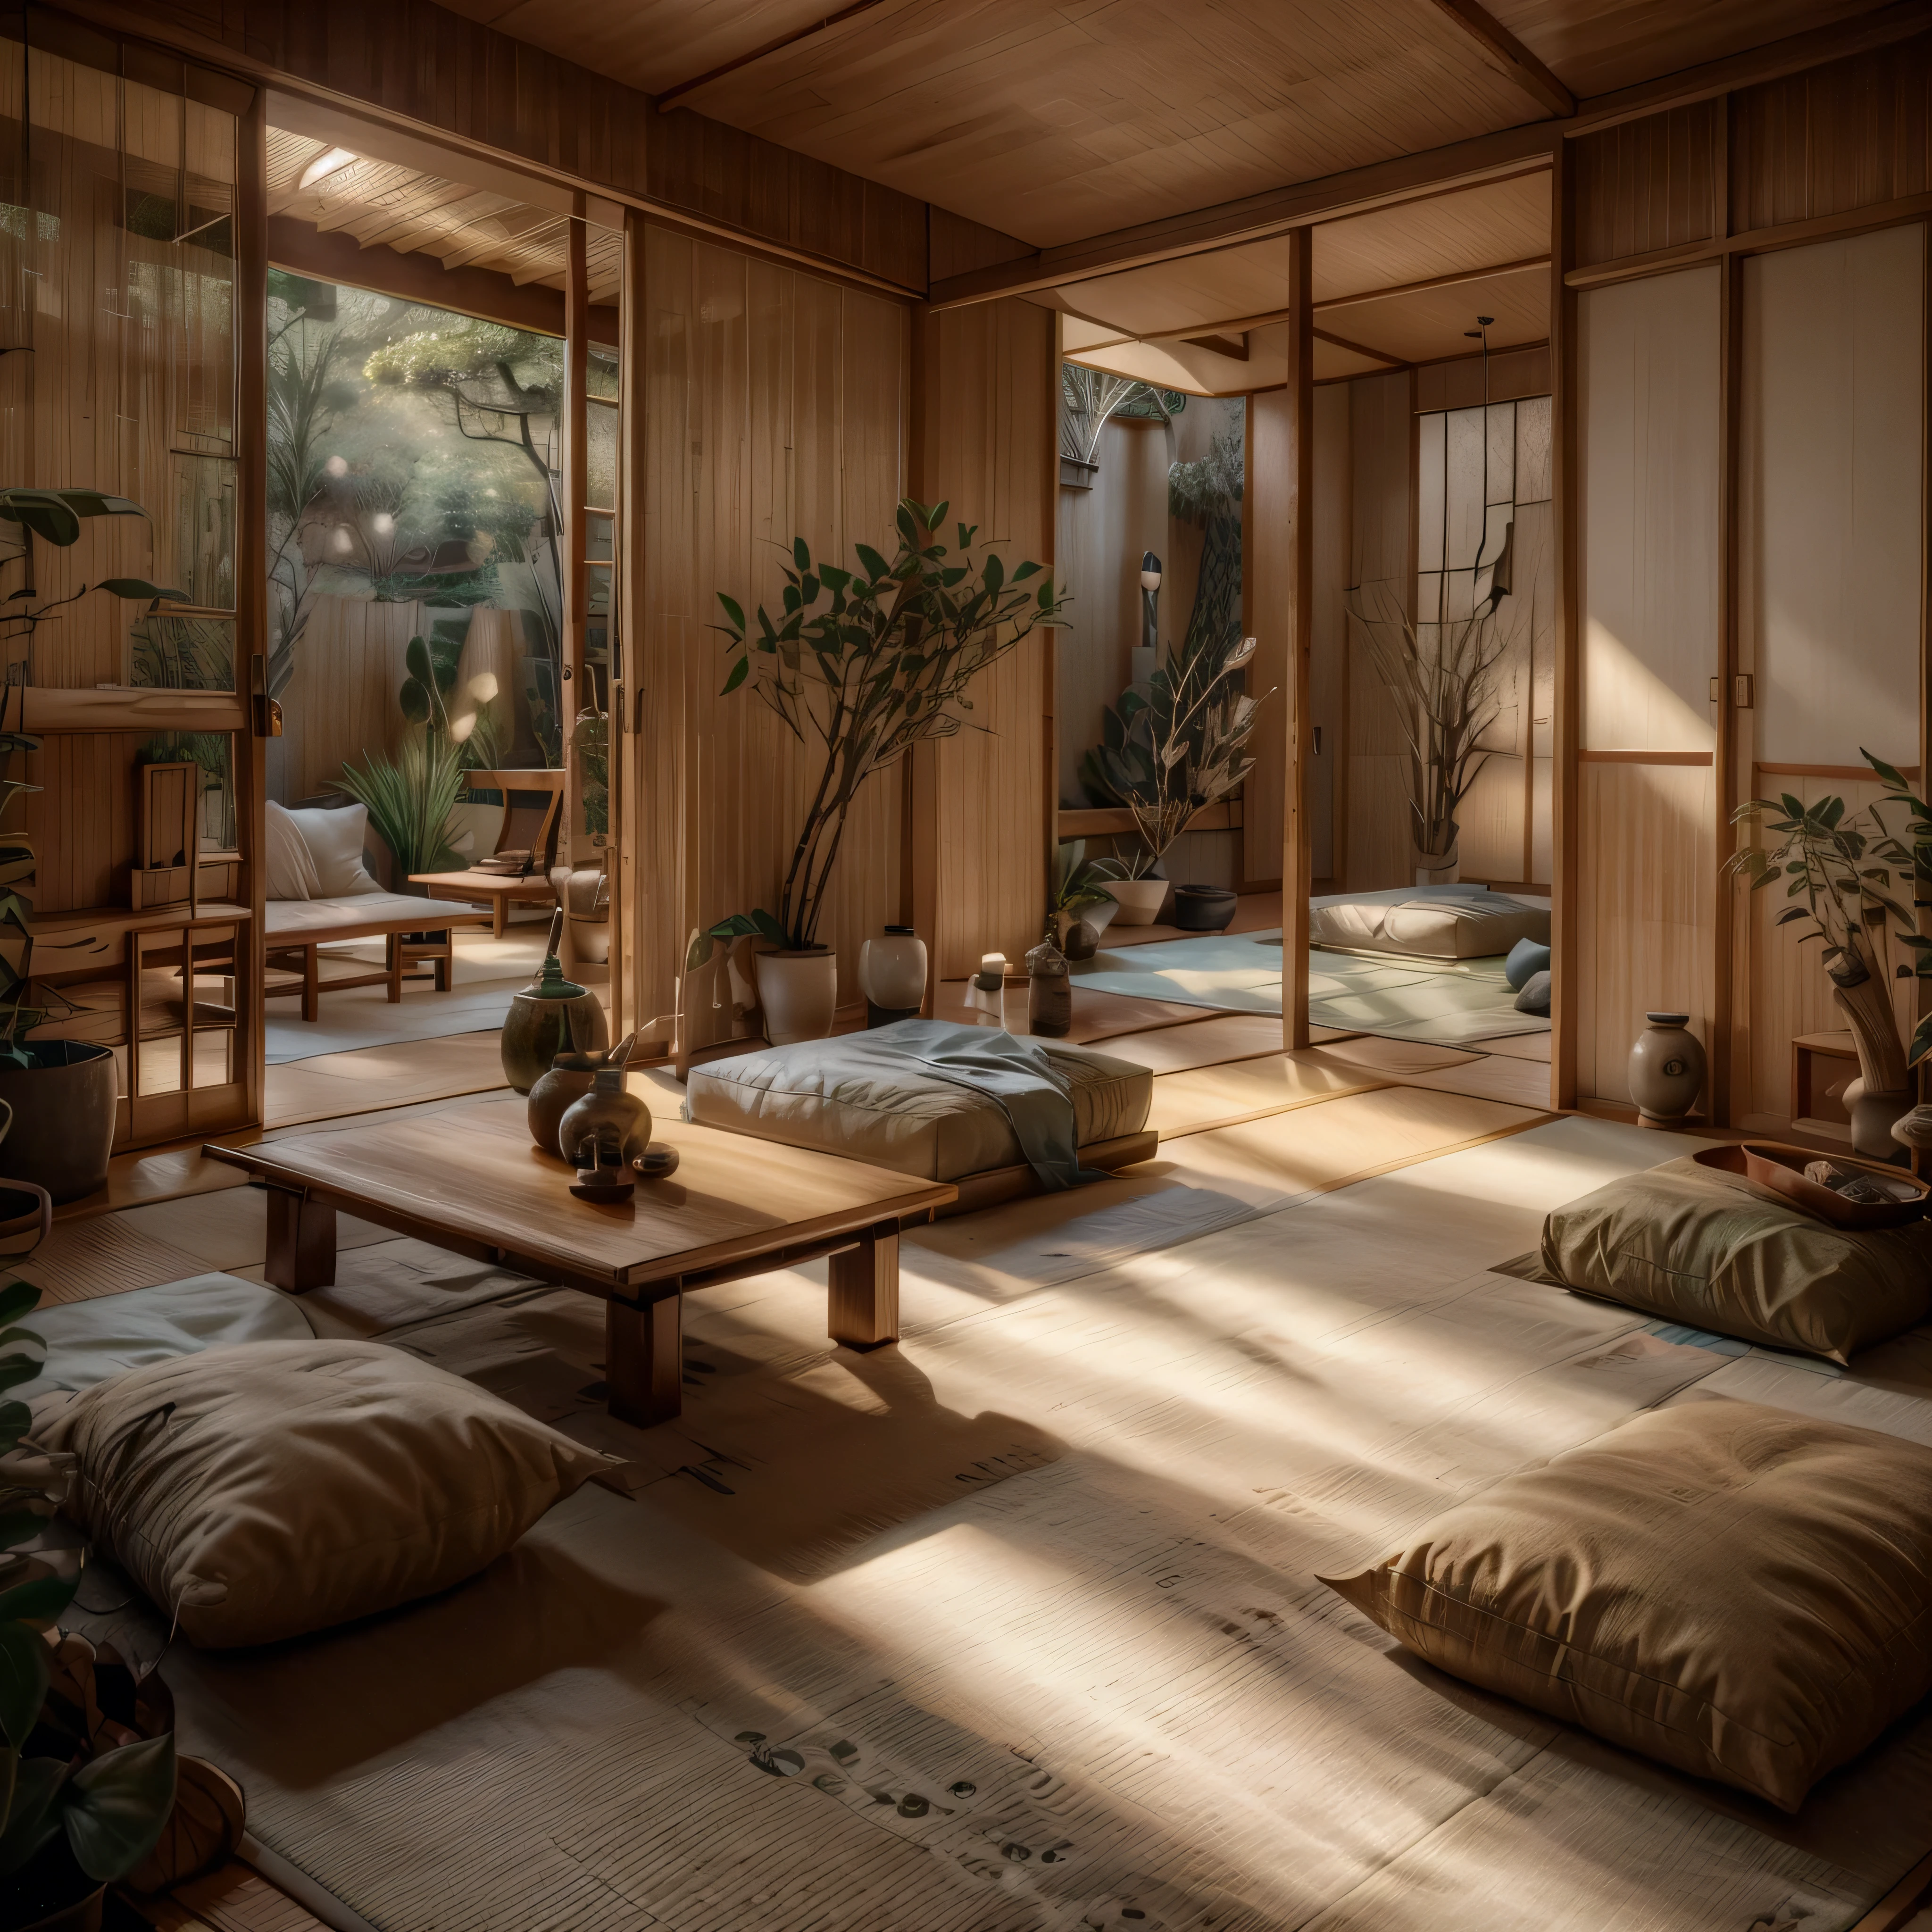 Ein ruhiger Raum im japanischen Design mit Tatami-Matten, Shoji-Bildschirme, und minimalistische Einrichtung. Betonen Sie natürliche Materialien mit einem niedrigen Holztisch, Bodenkissen, und ein Futonbett. Fügen Sie eine Bambuspflanze hinzu, ein Stein-Wasserspiel, und ein kleines, einfacher Schrein zur Meditation.